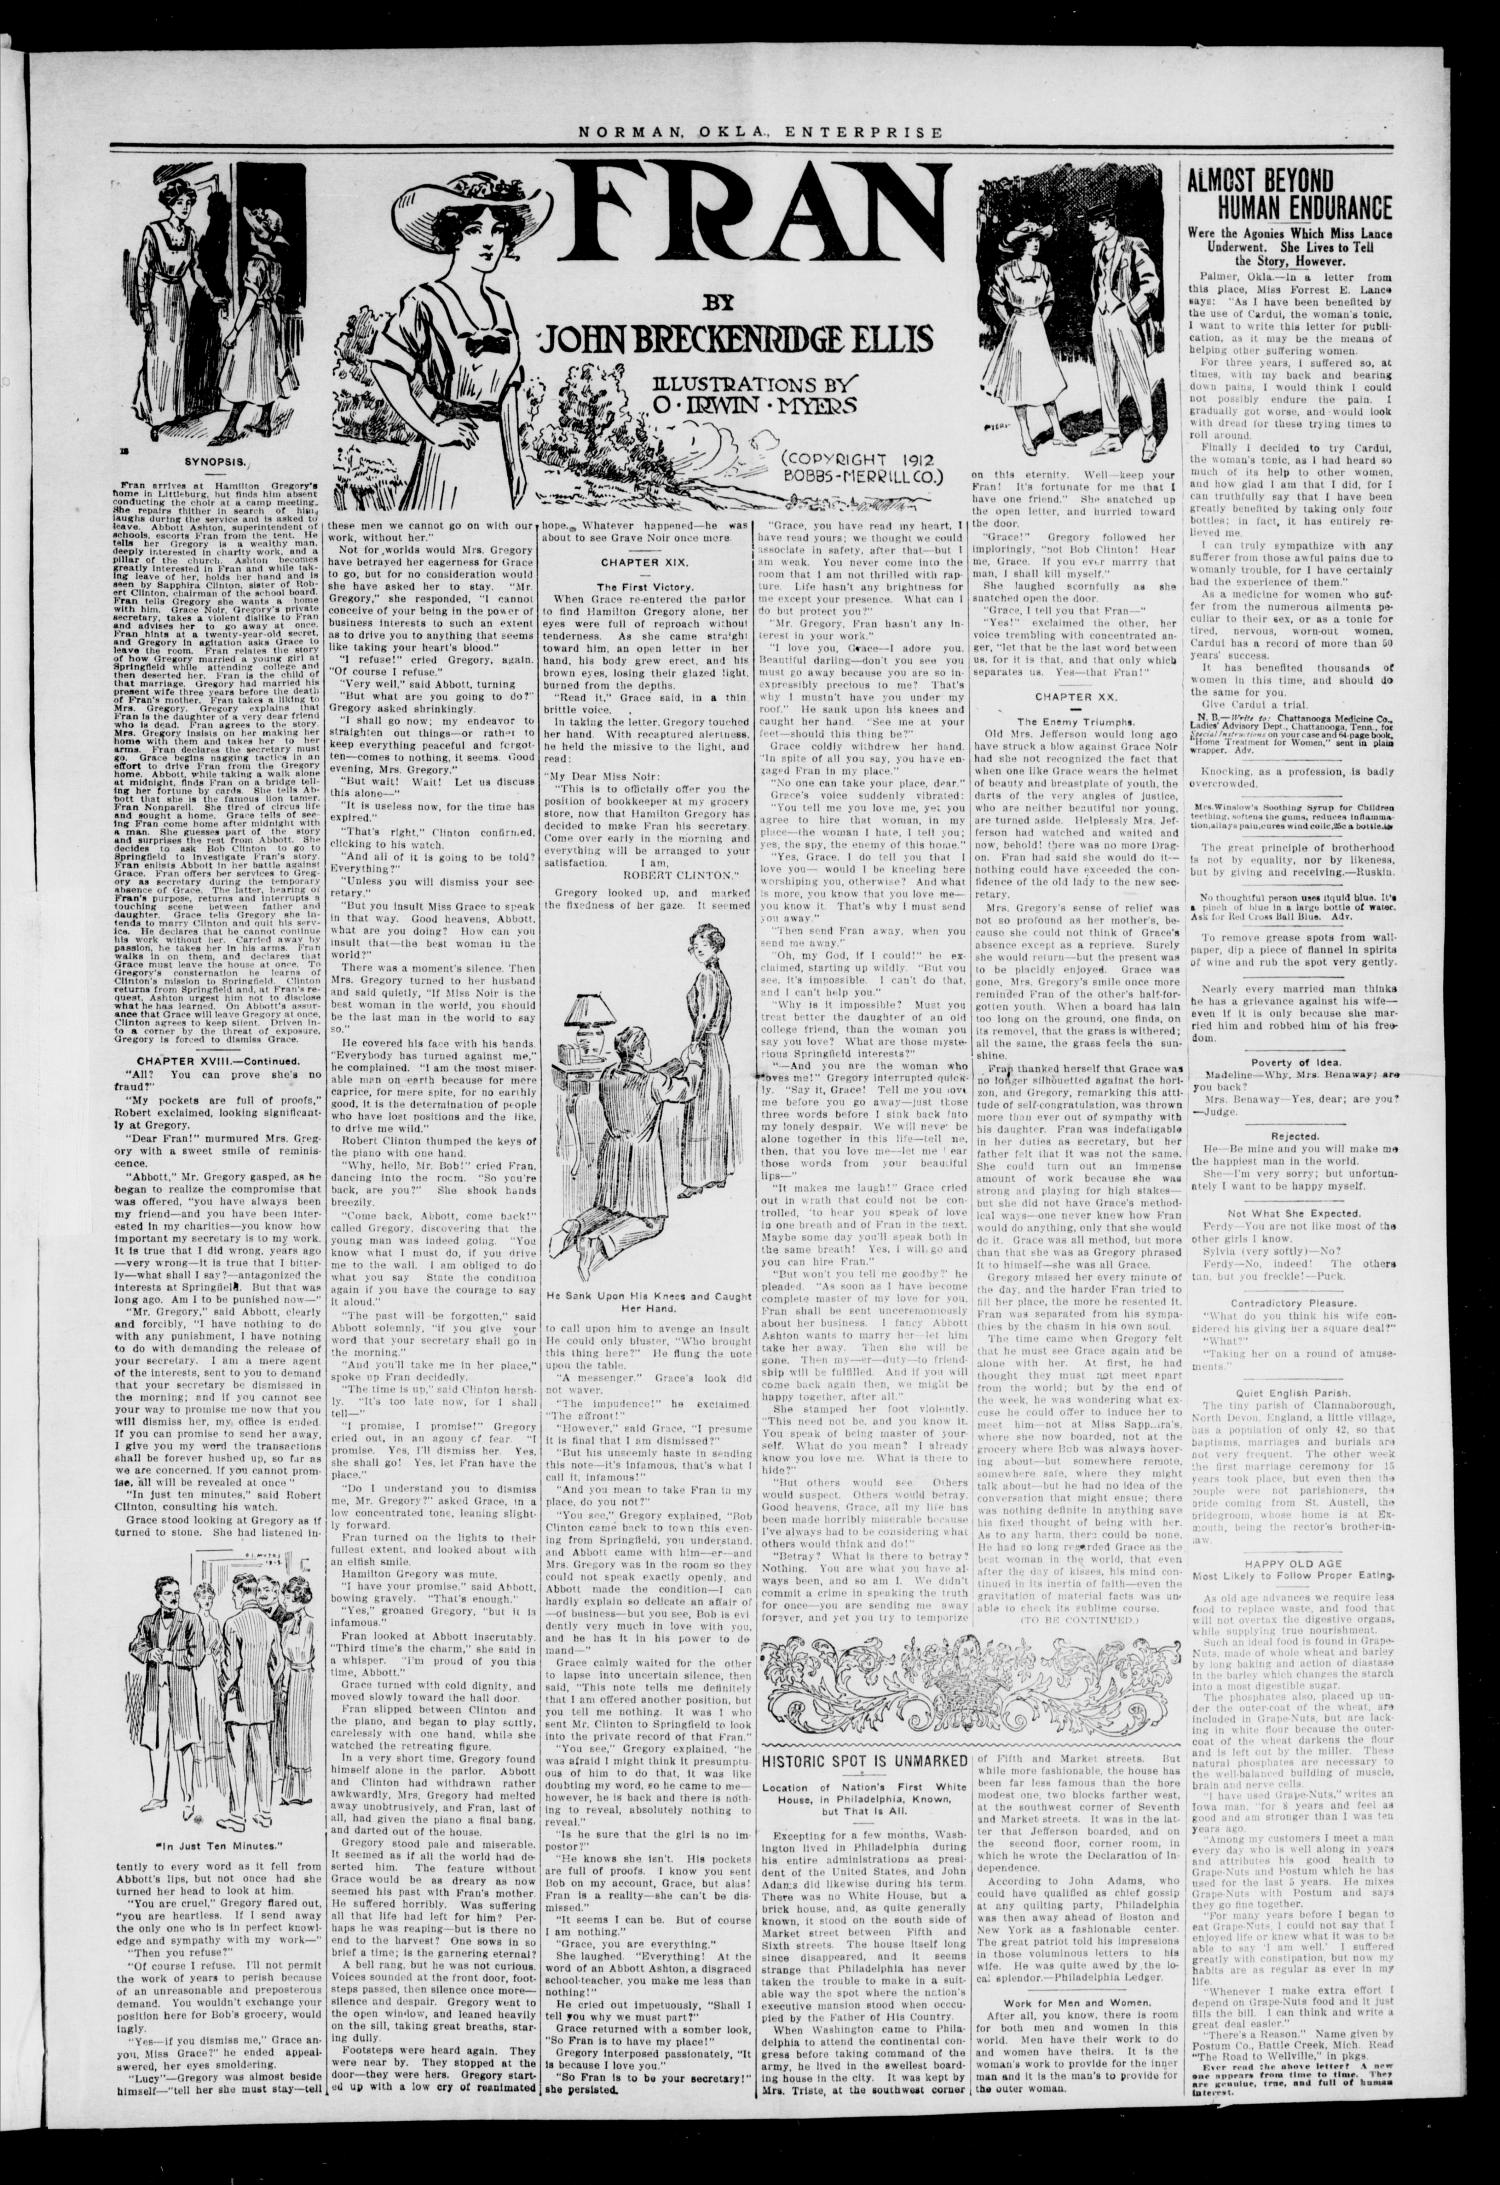 Cleveland County Enterprise. (Norman, Okla.), Vol. 22, No. 12, Ed. 1 Thursday, September 25, 1913
                                                
                                                    [Sequence #]: 3 of 8
                                                